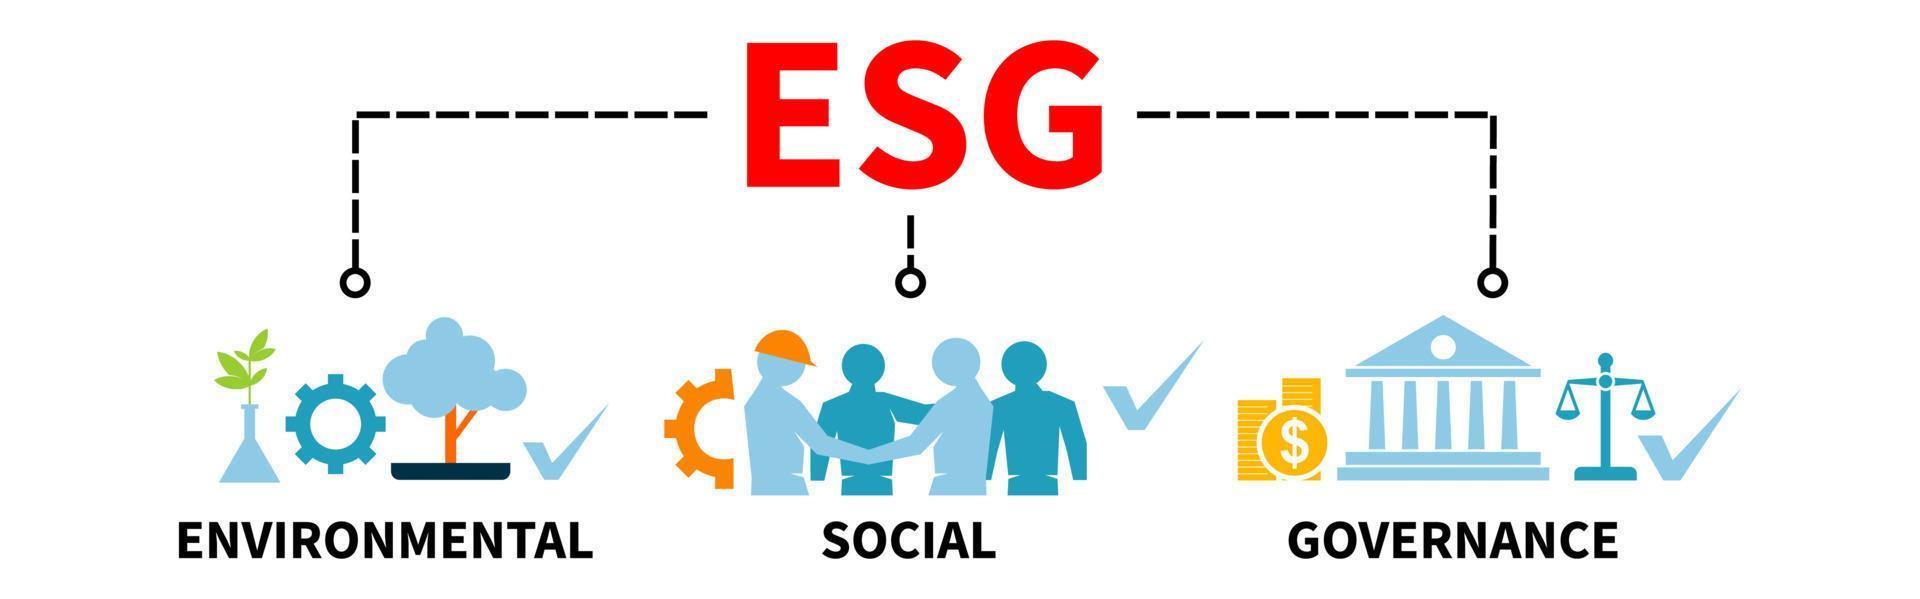 esg banner web vector ilustración concepto de negocio sostenible y ético para la gobernanza social ambiental con icono